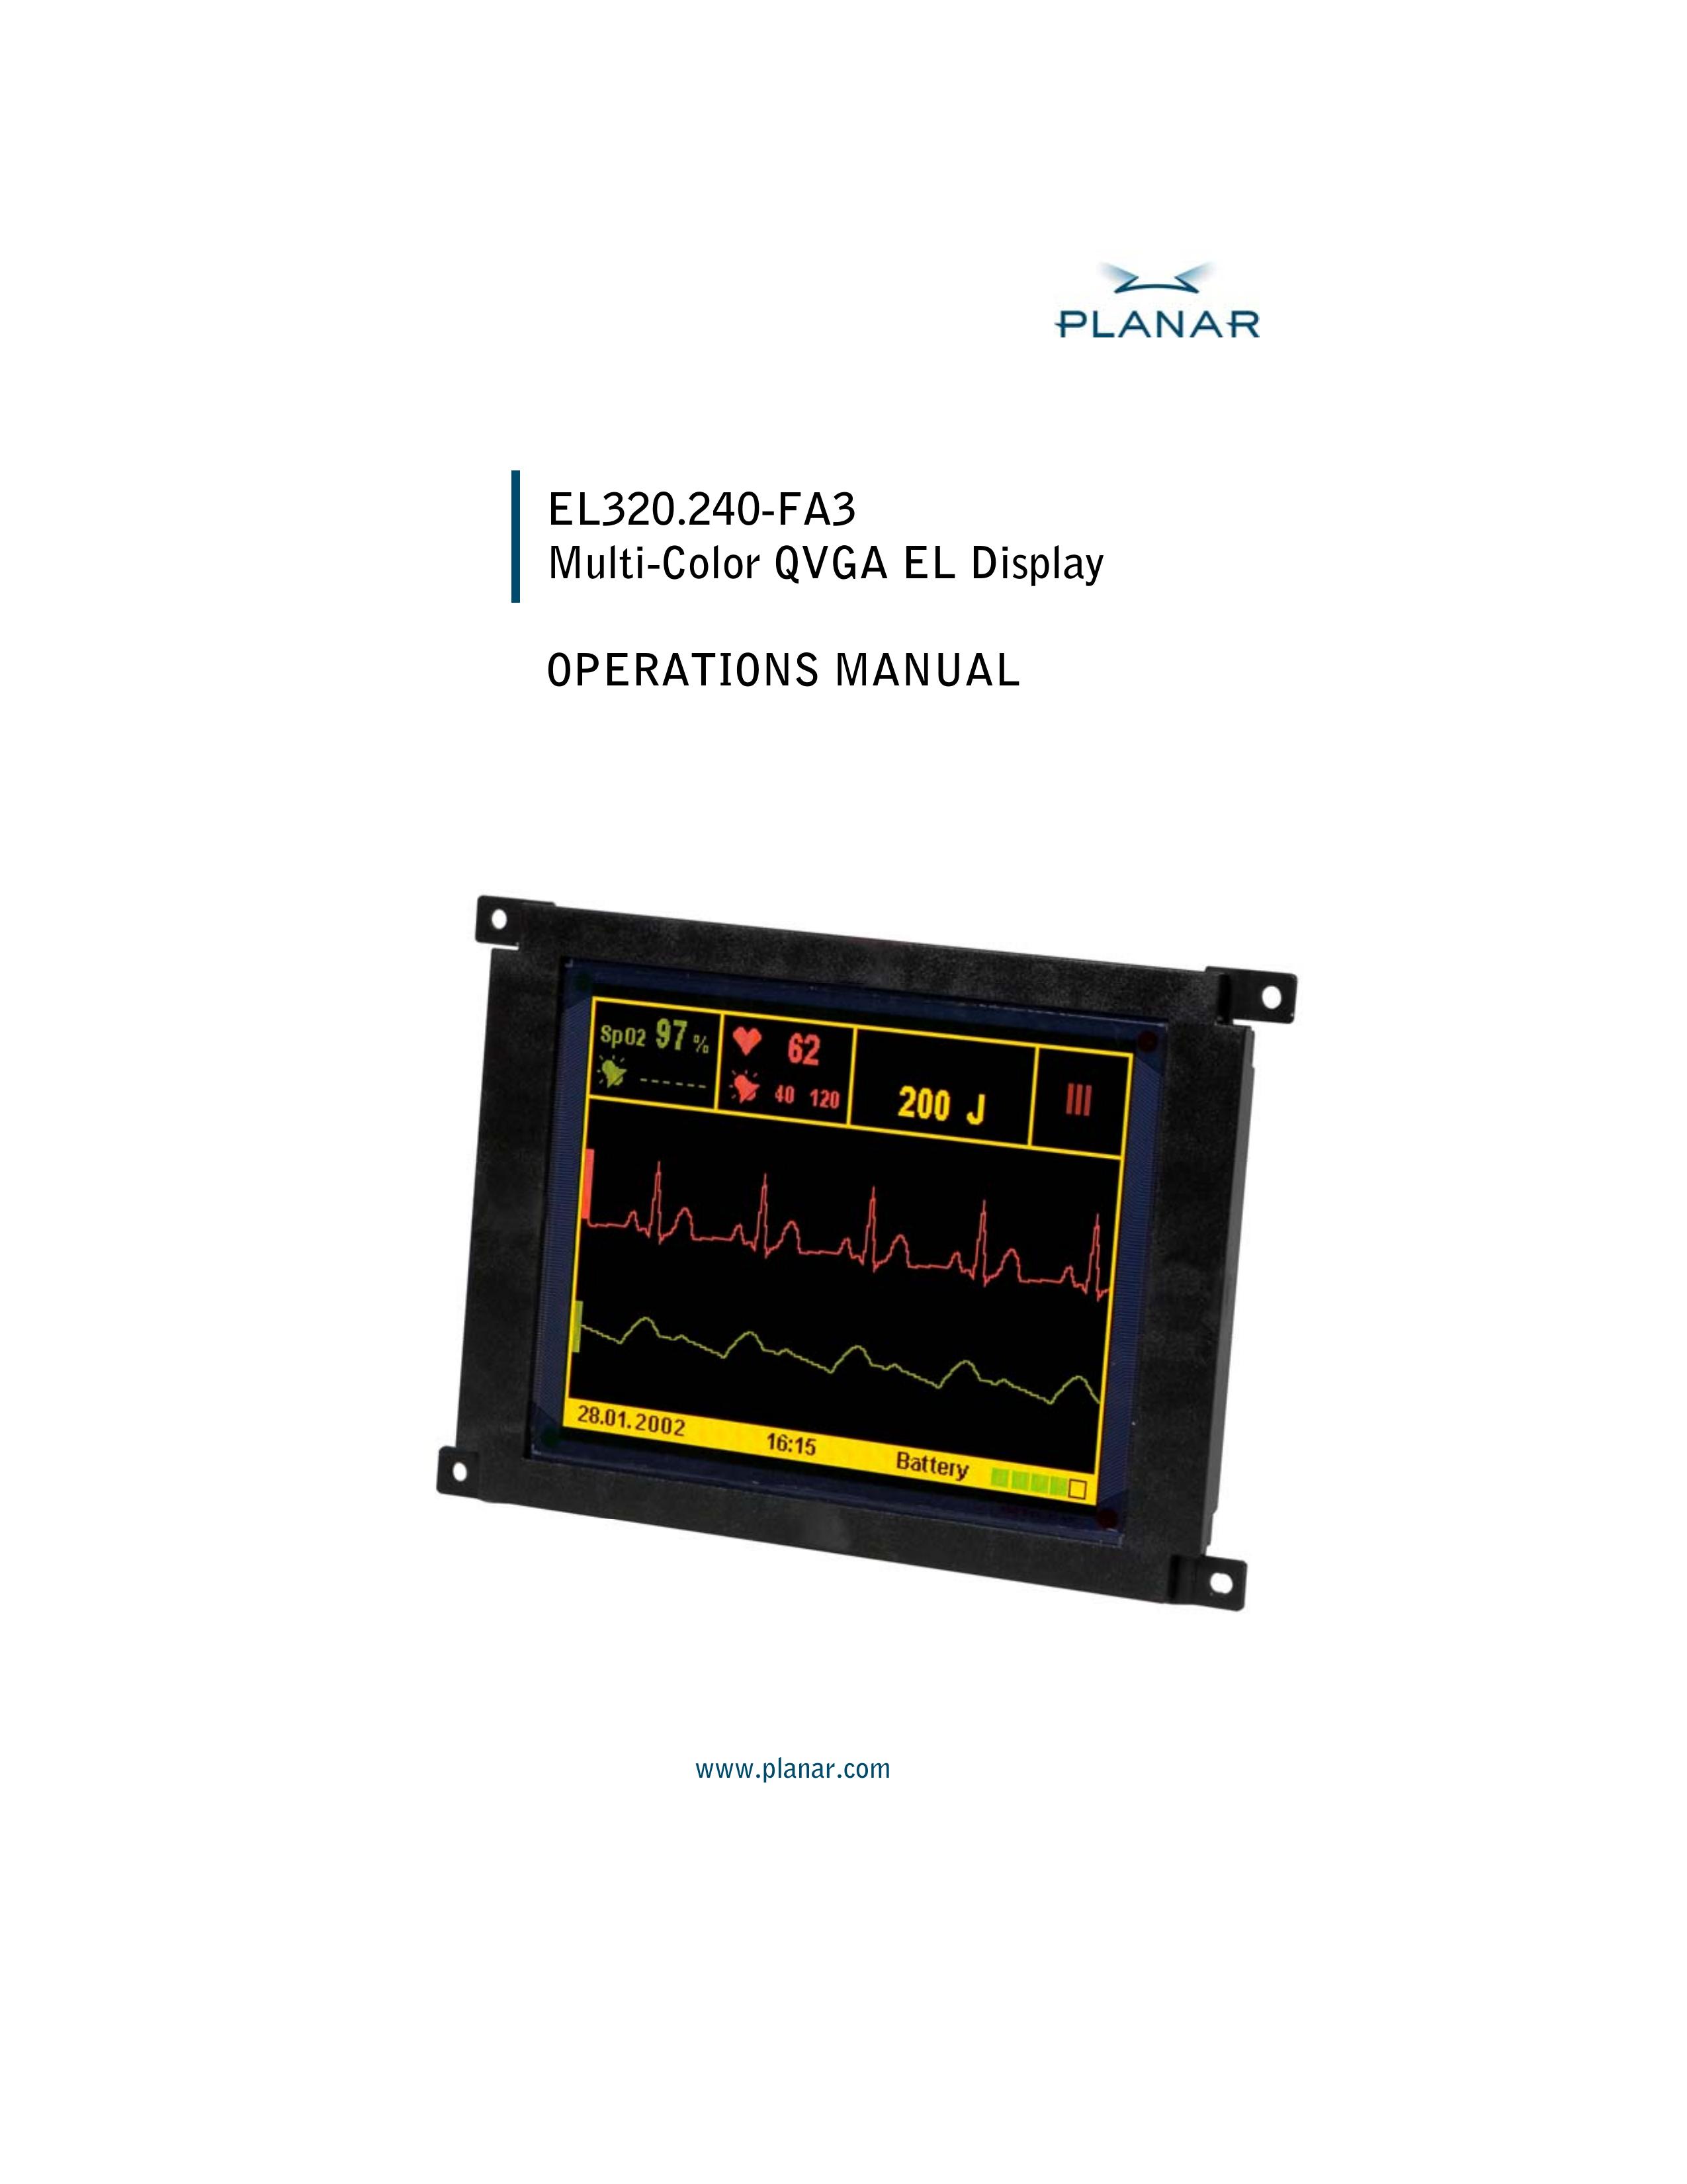 Planar EL320.240-FA3 Respiratory Product User Manual